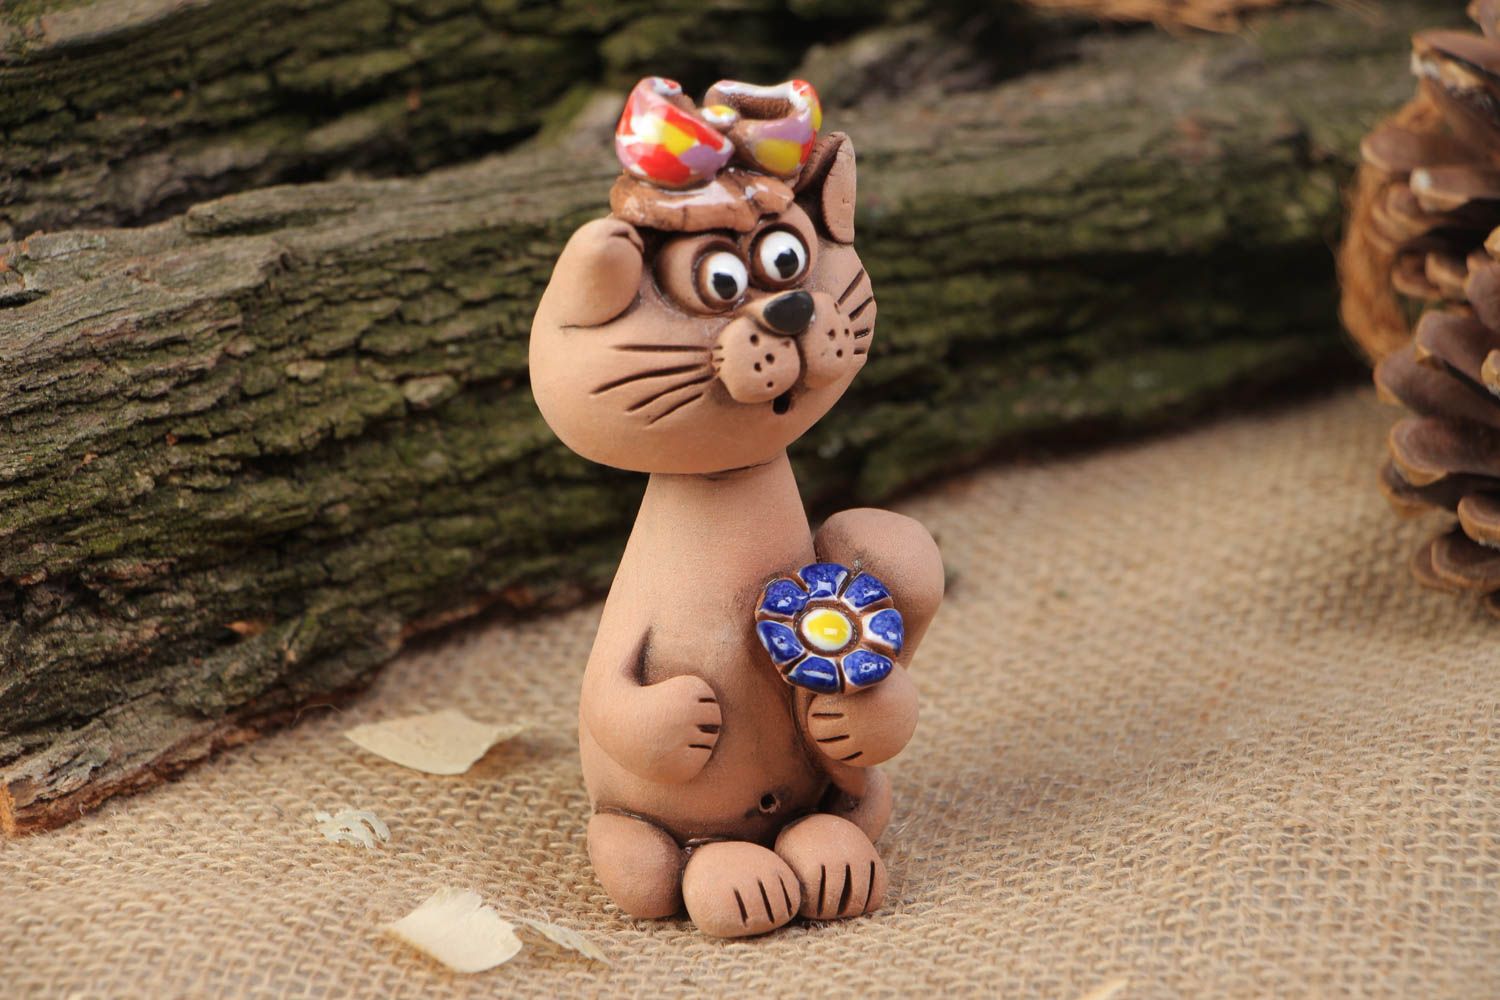 Фигурка кошки из глины расписанная красками маленькая красивая ручной работы фото 1